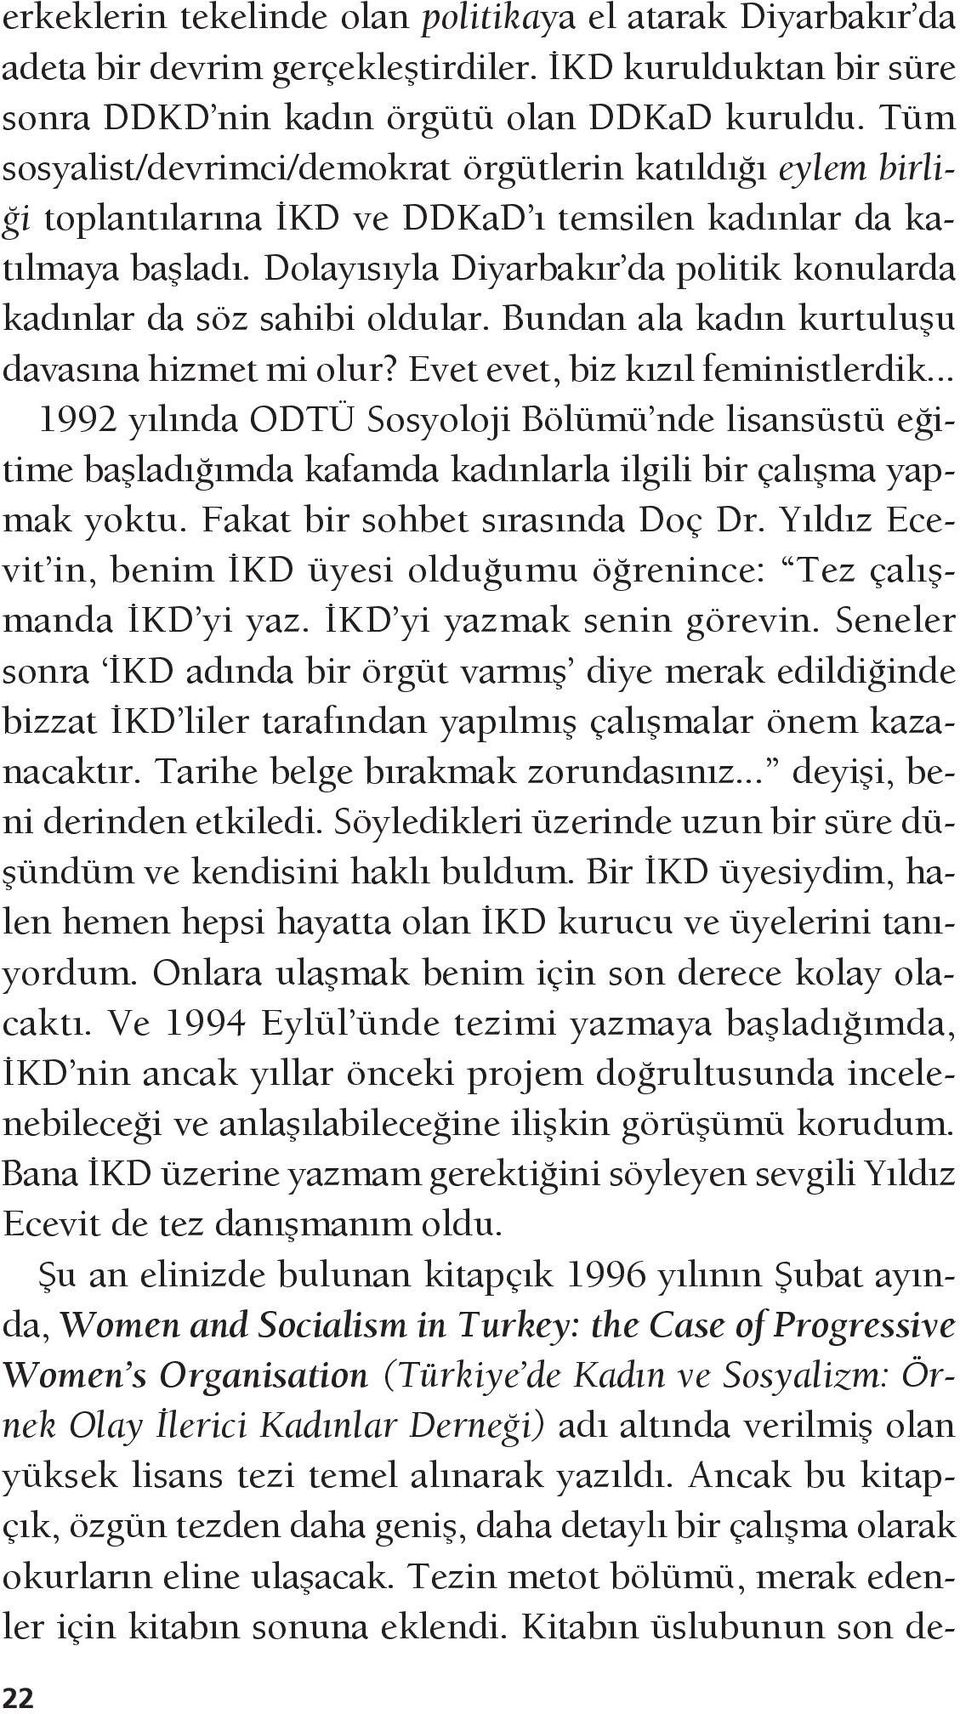 Dolayısıyla Diyarbakır da politik konularda kadınlar da söz sahibi oldular. Bundan ala kadın kurtuluşu davasına hizmet mi olur? Evet evet, biz kızıl feministlerdik.